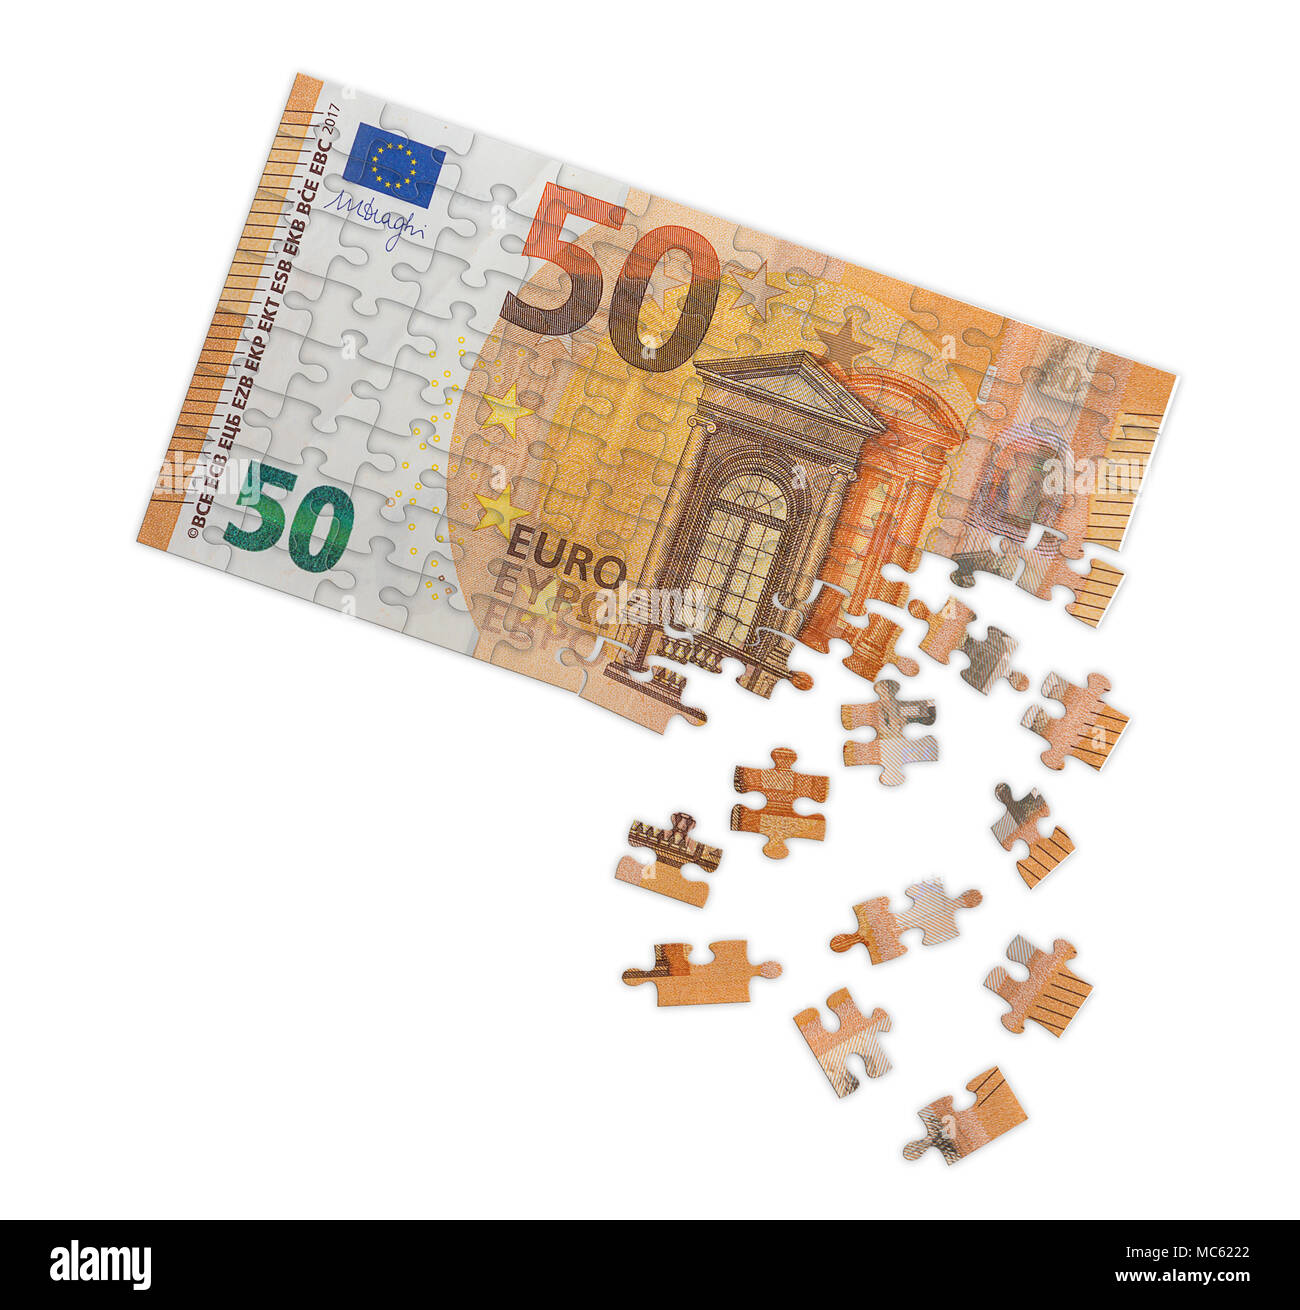 Concetto di immagine di disintegrazione banconota europea Foto Stock